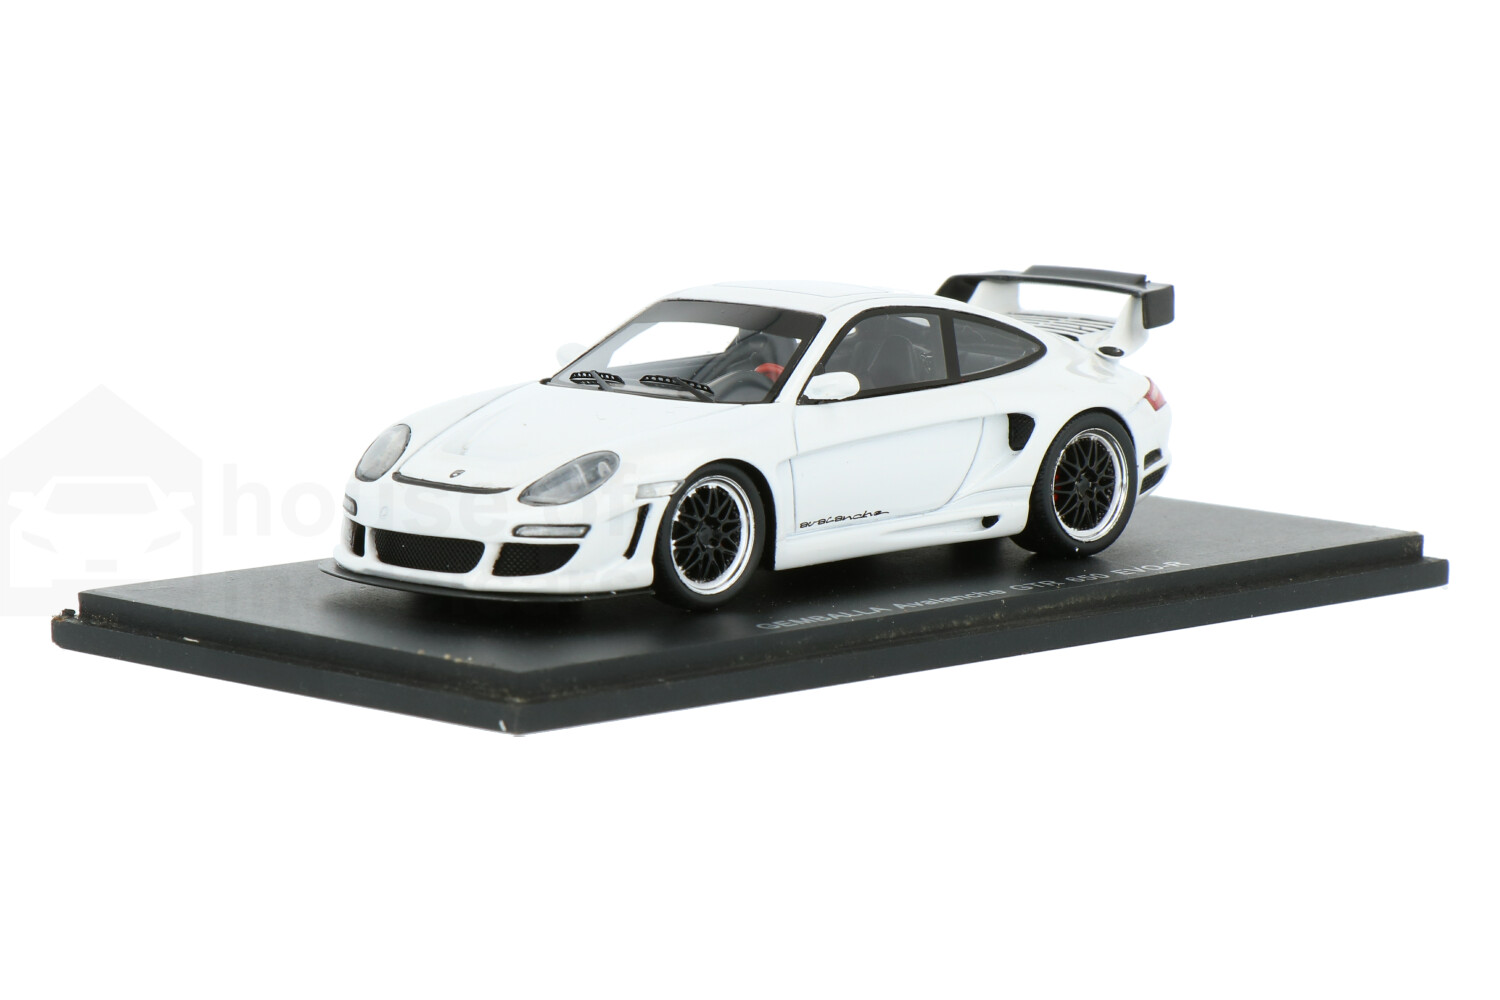 Porsche-911-Gemballa-GTR-S0719_63159580006907196-Spark-Porsche-911-Gemballa-GTR-S0719_Houseofmodelcars_.jpg